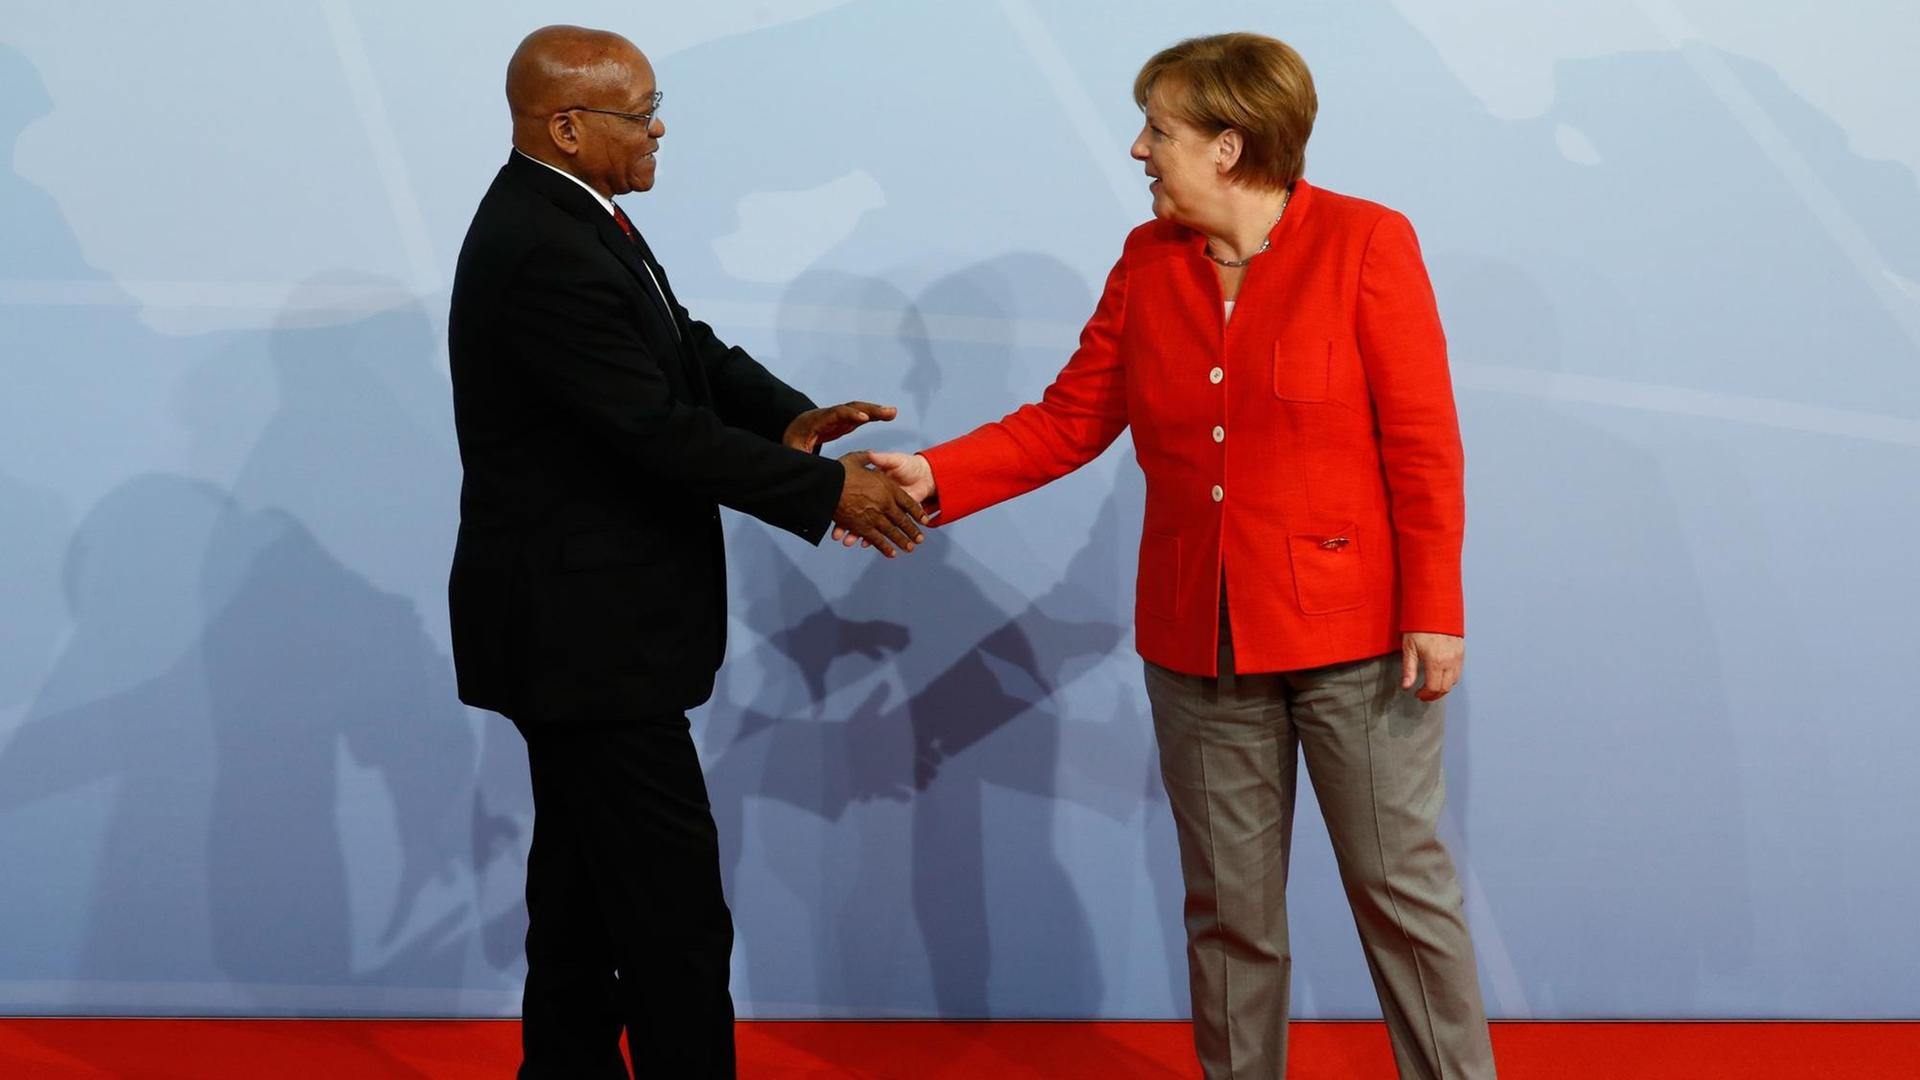 Südafrikas Präsident Jacob Zuma und Angela Merkel beim G20-Gipfel in Hamburg